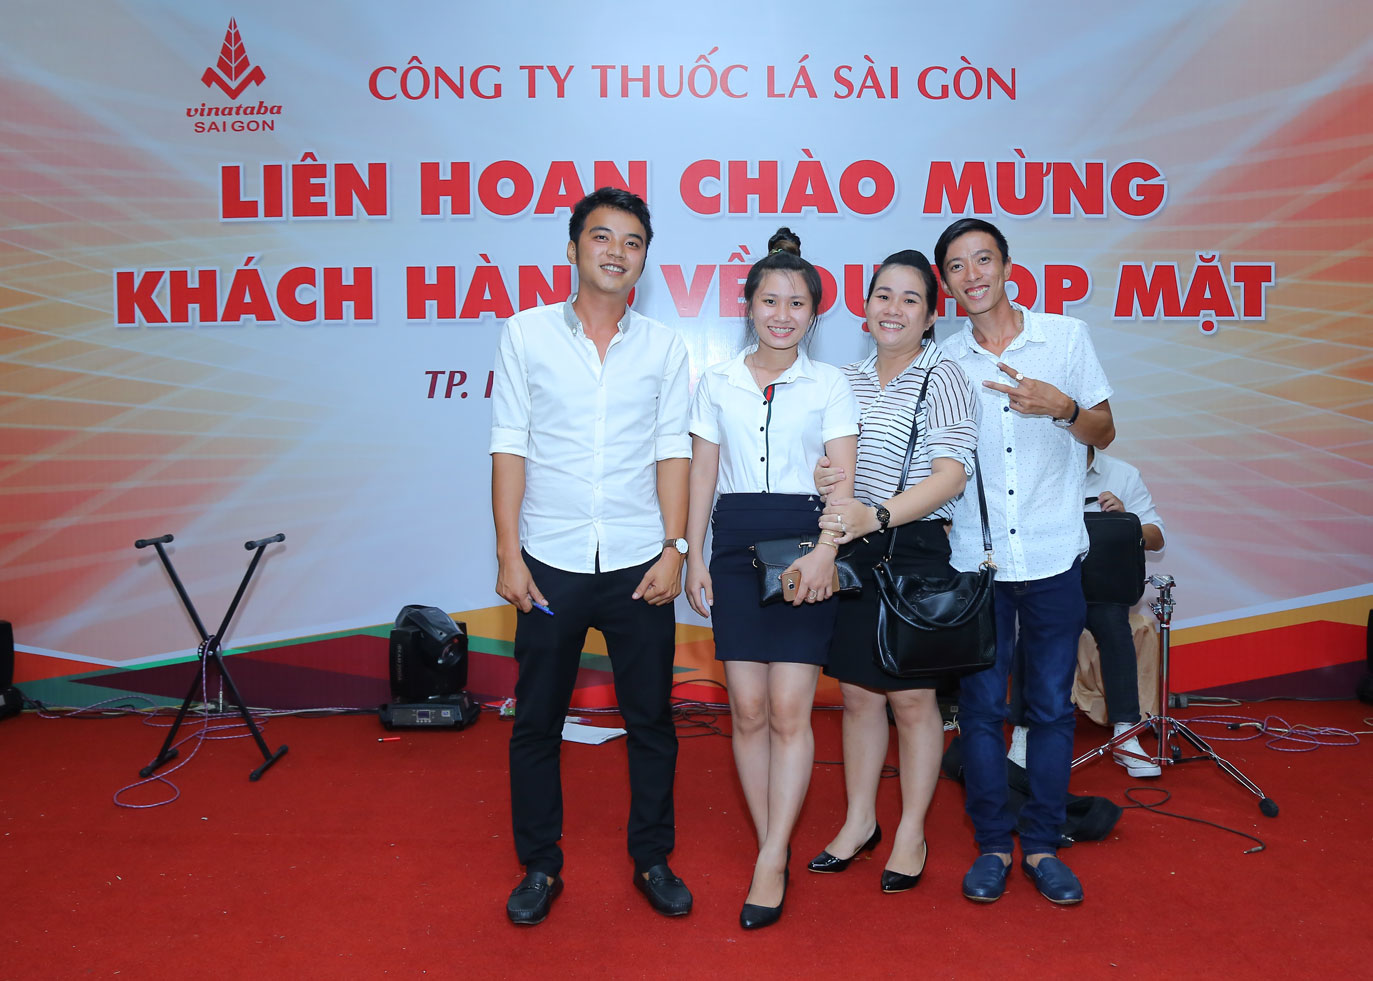 Họp mặt khách hàng tỉnh Tây Ninh ngày 20/07/2017